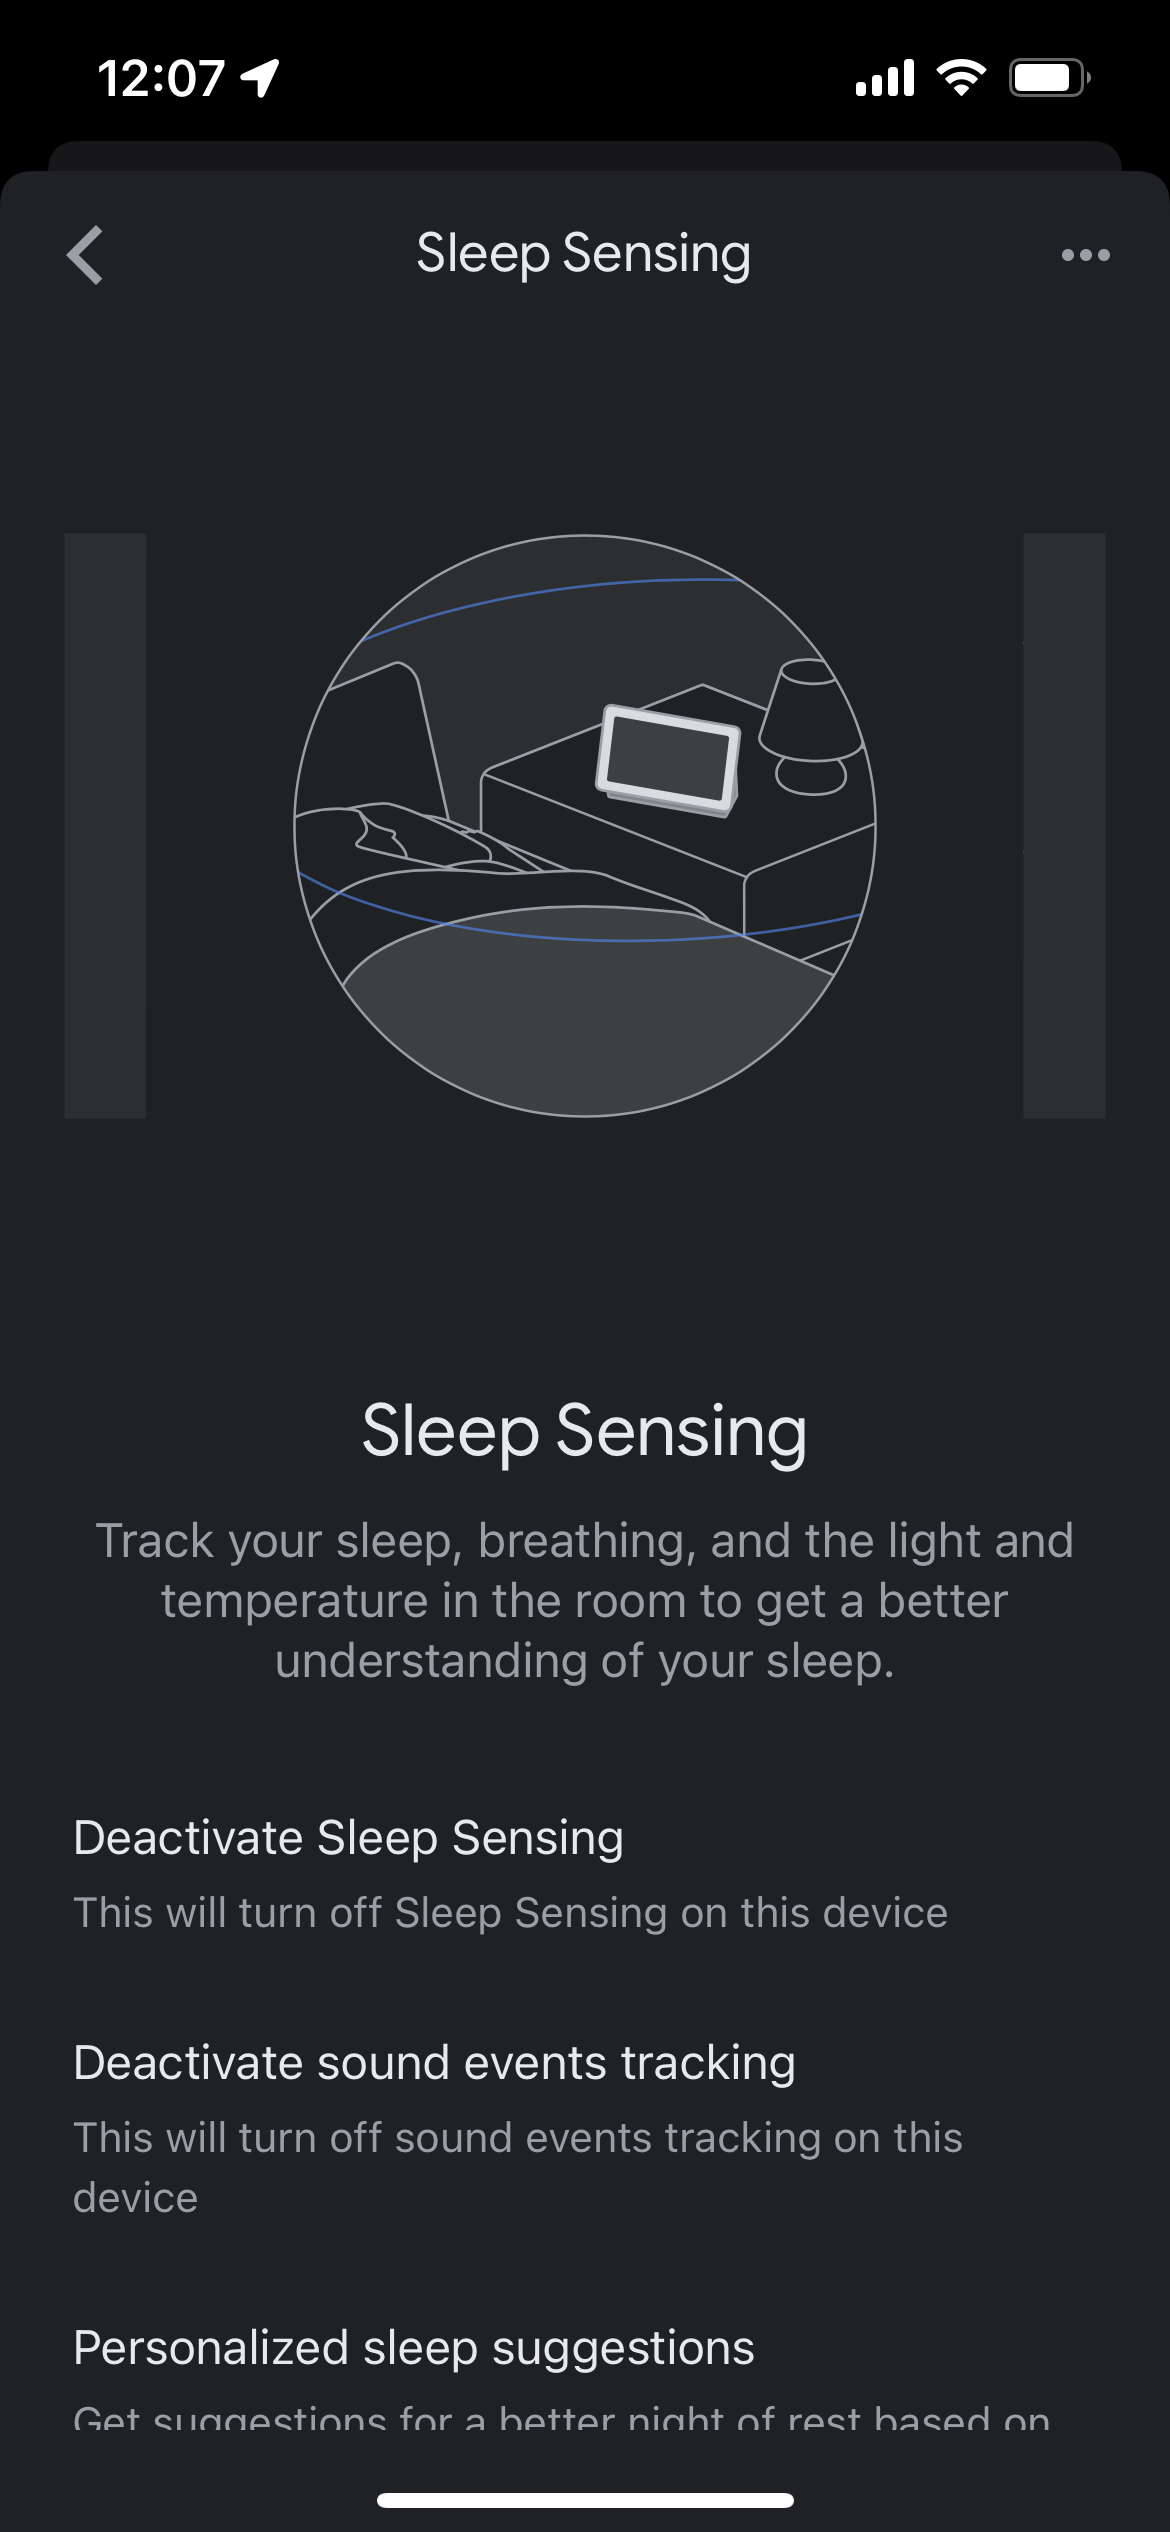 Sleep Sensing settings in the Google Home app